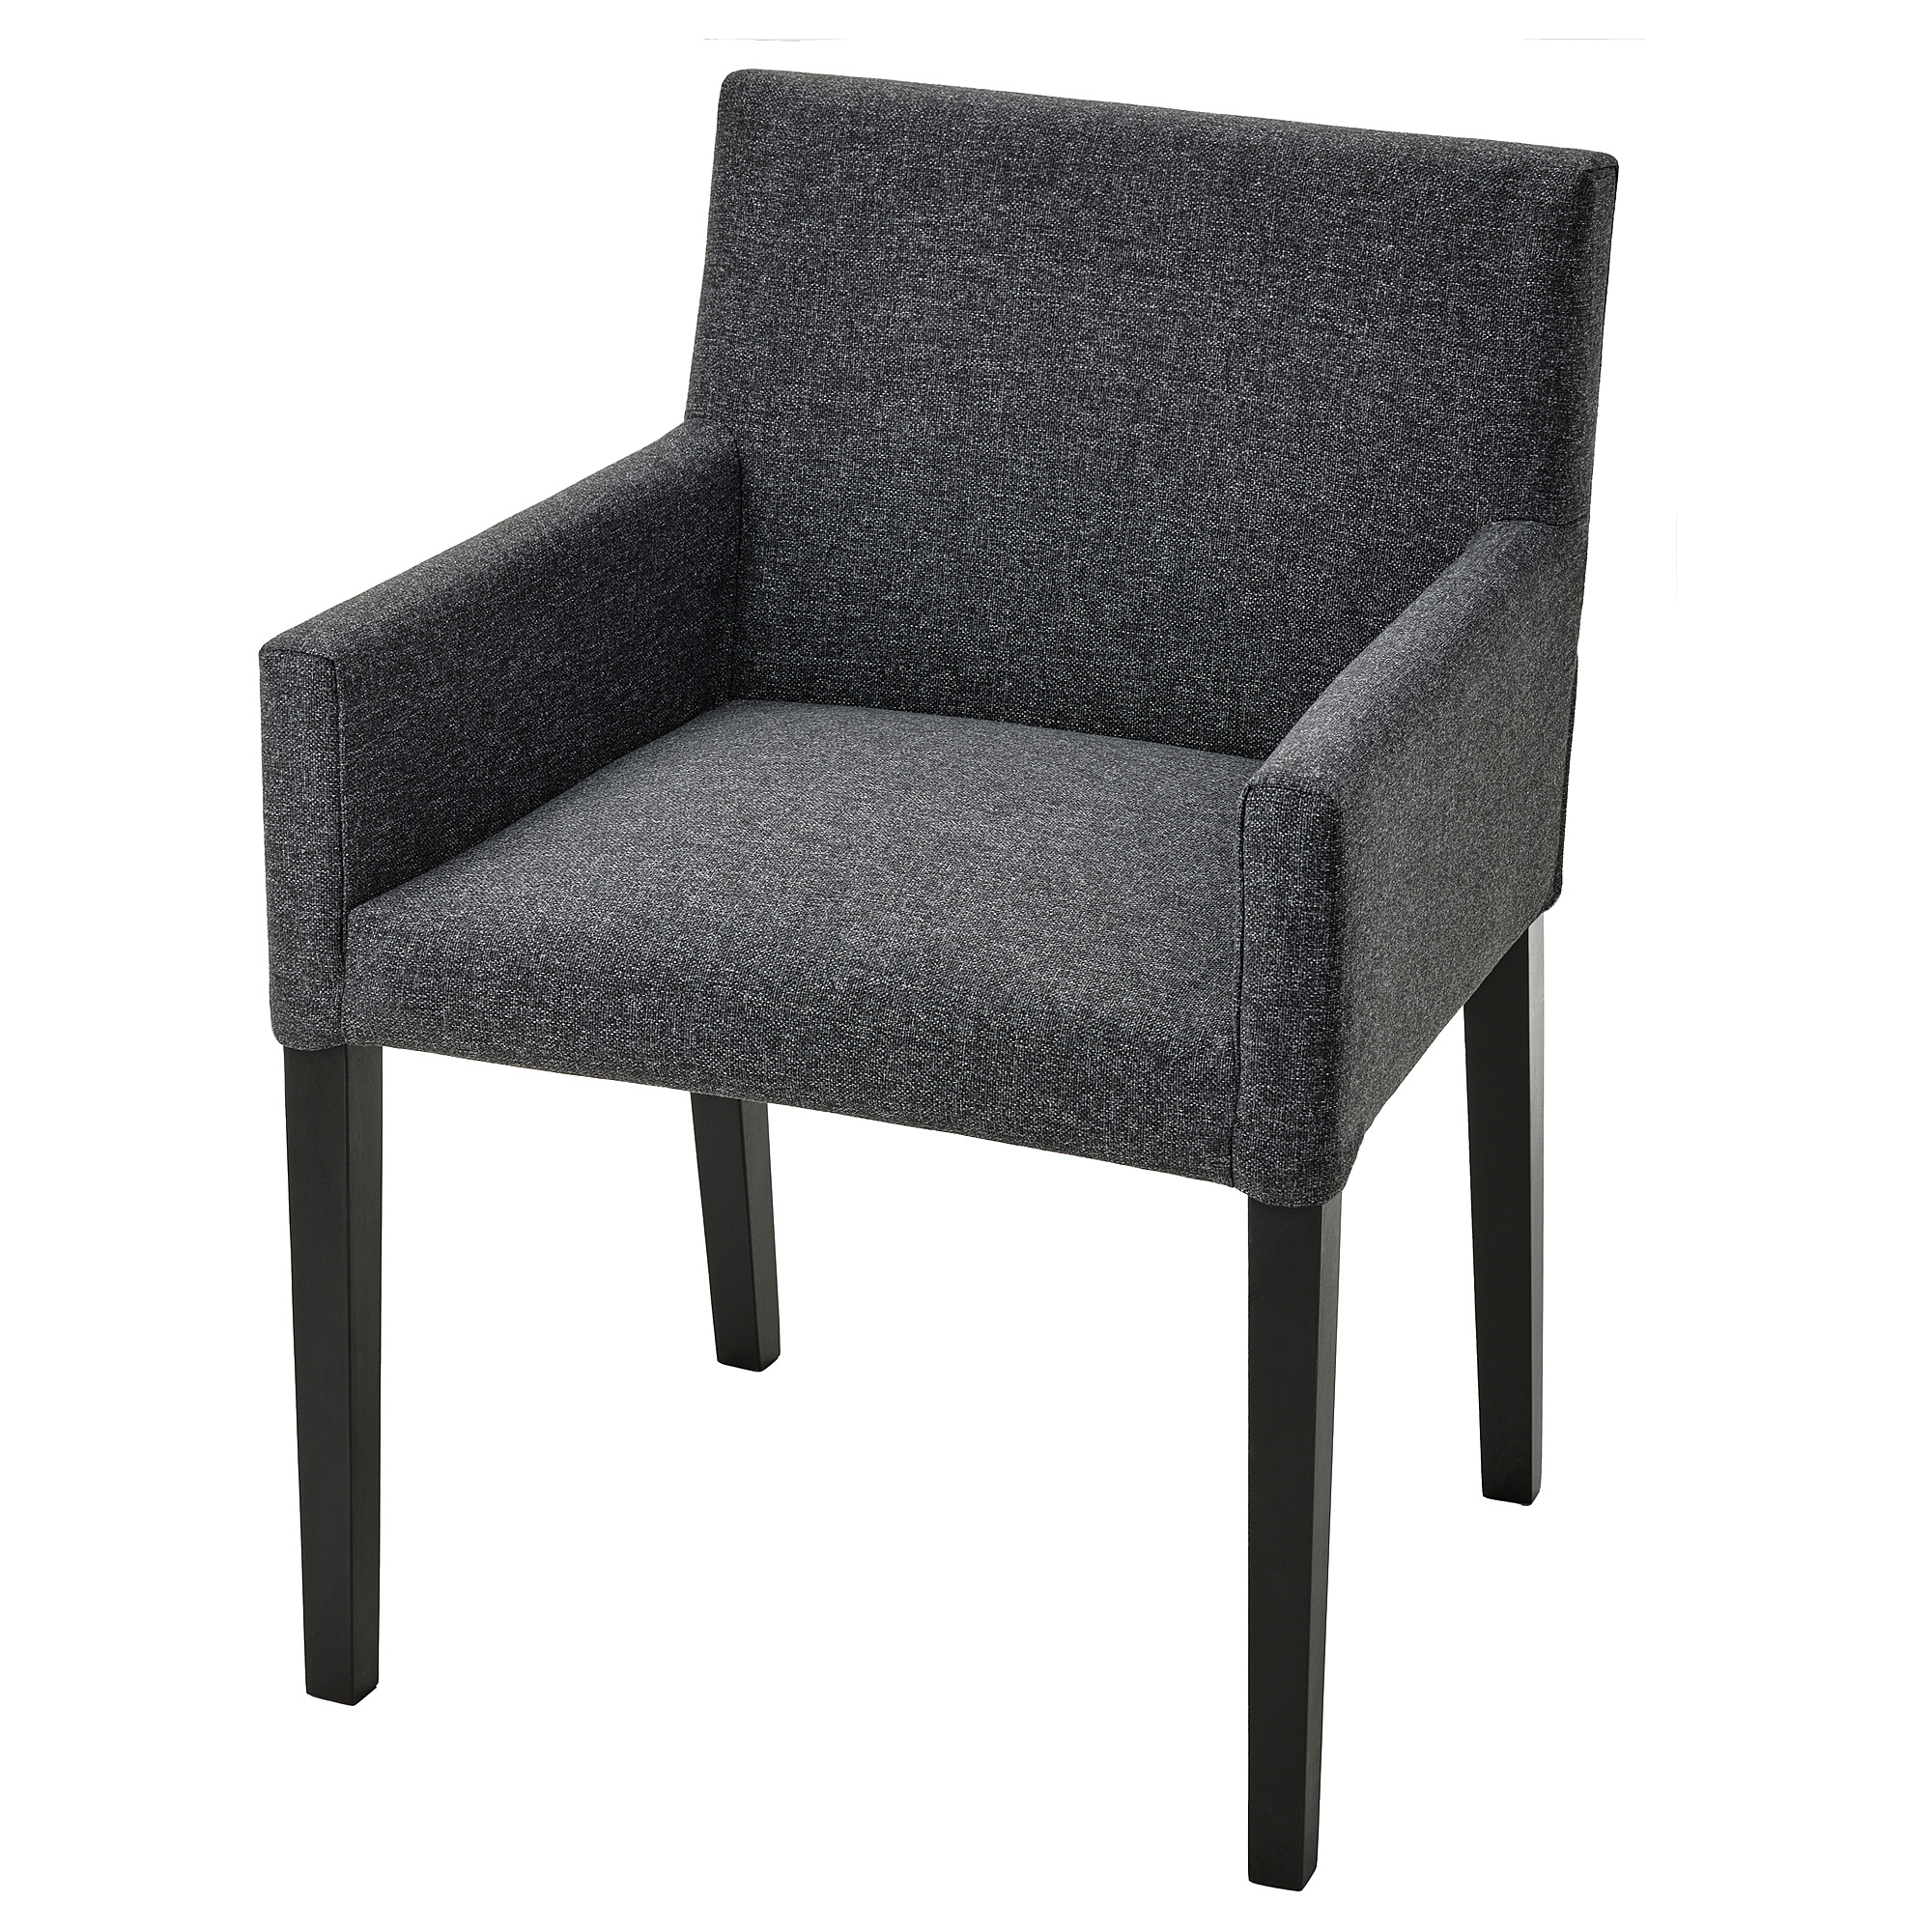 MÅRENÄS chair cover